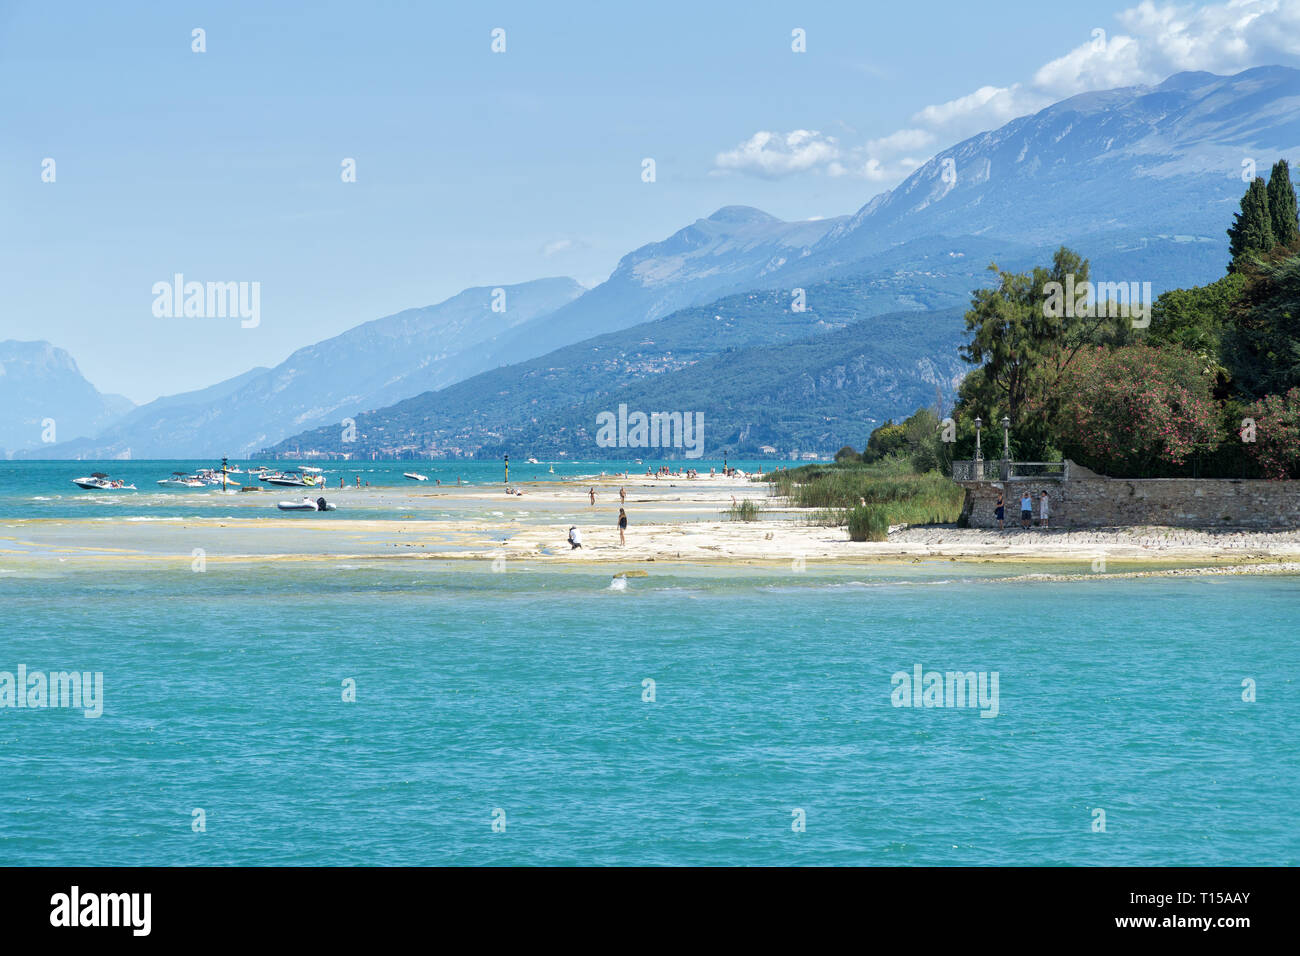 SIRMIONE, Italia - 07 agosto 2017: turisti sulla spiaggia sassosa della cittadina di Sirmione sul Lago di Garda. Vista della costa del lago di Garda. Foto Stock